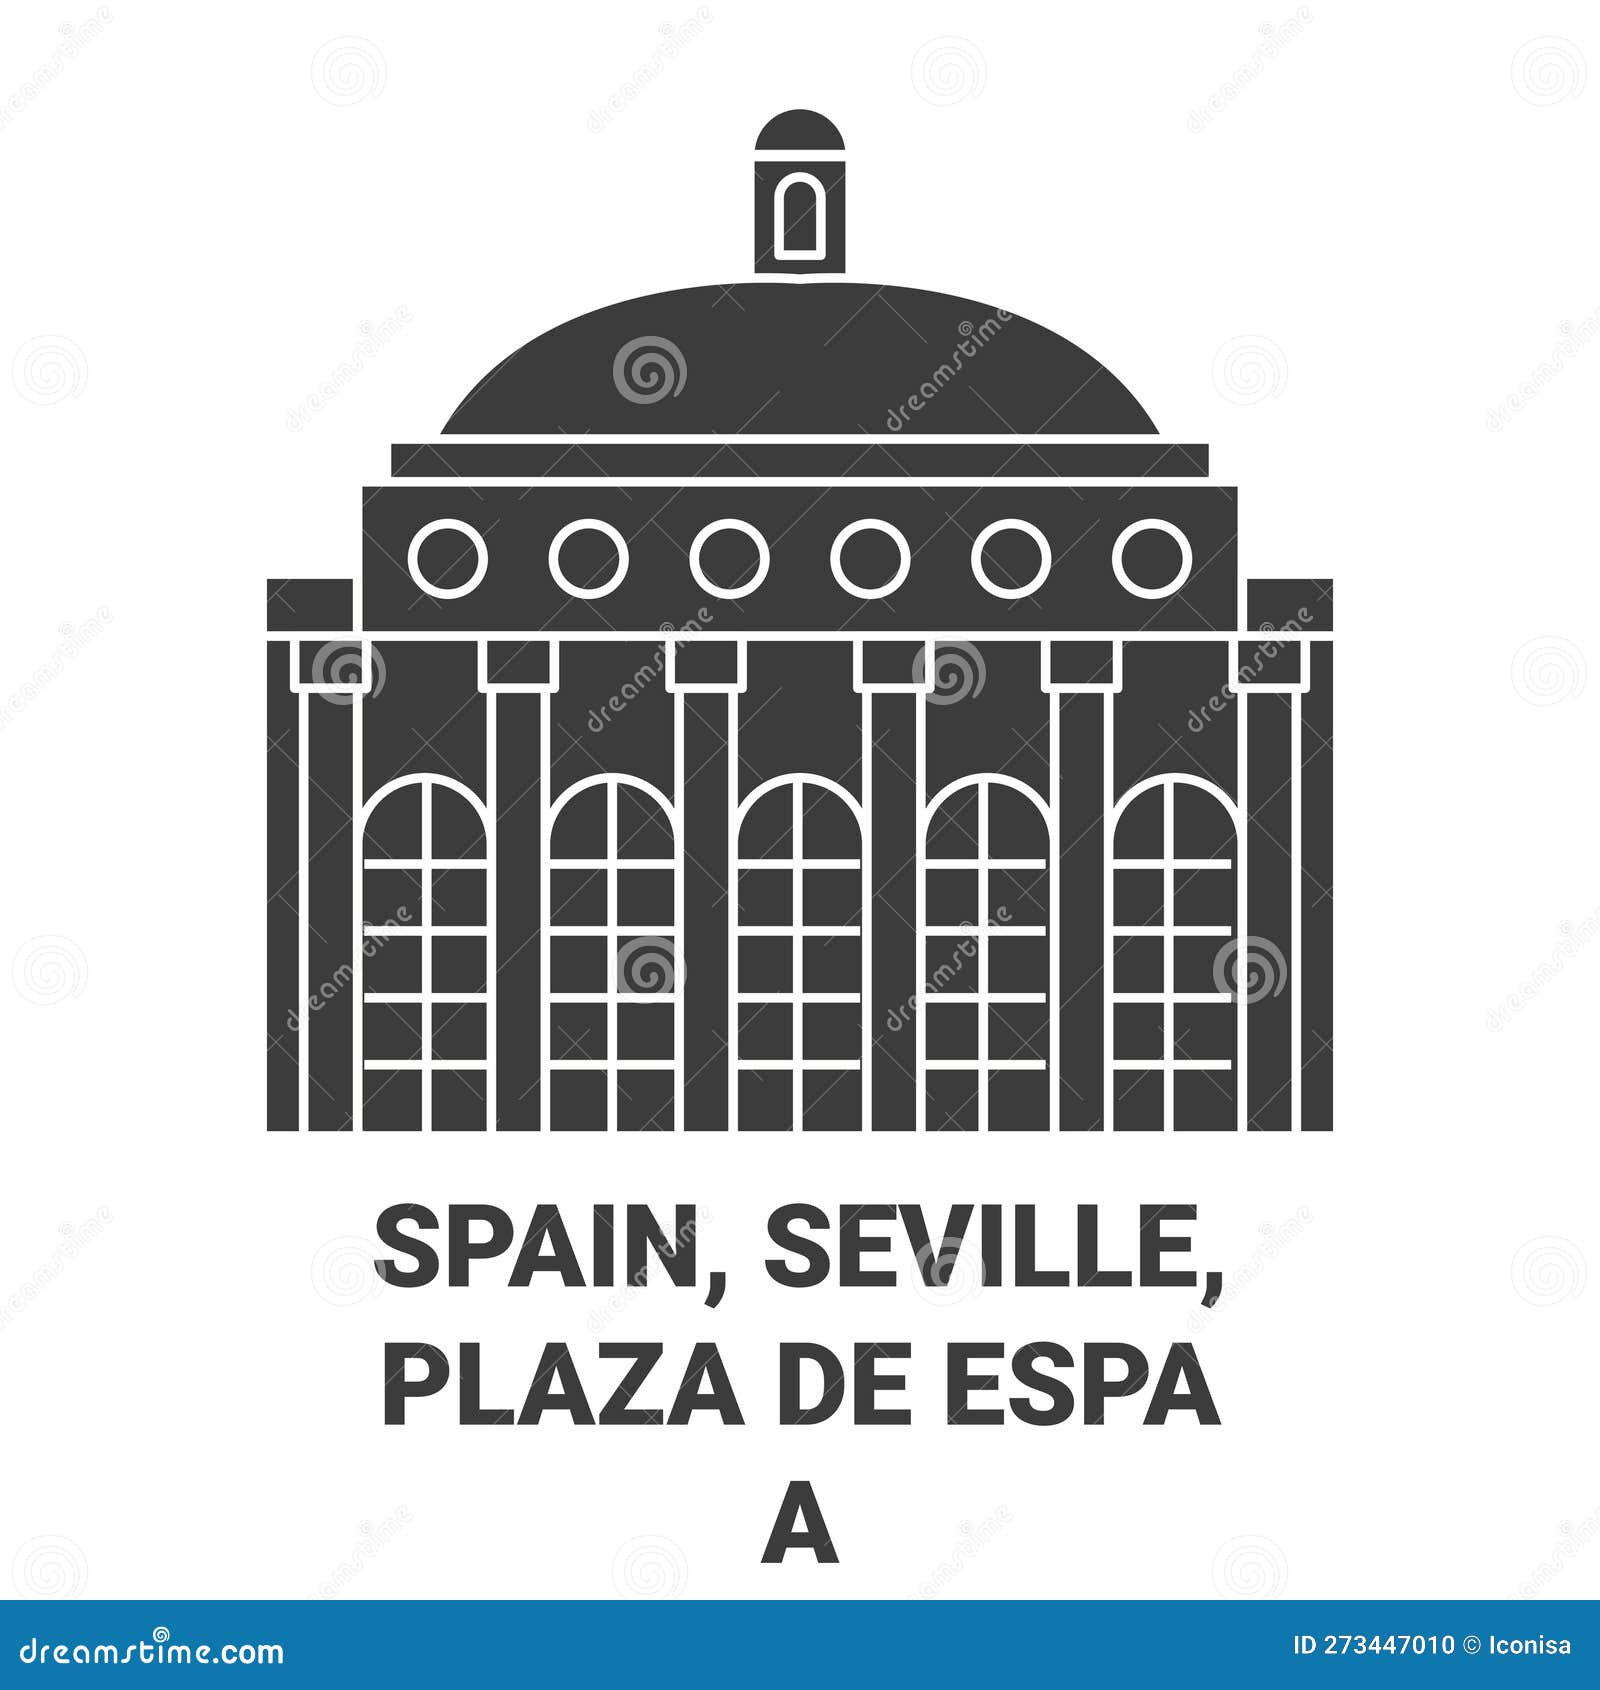 spain, seville, plaza de espaa travel landmark  